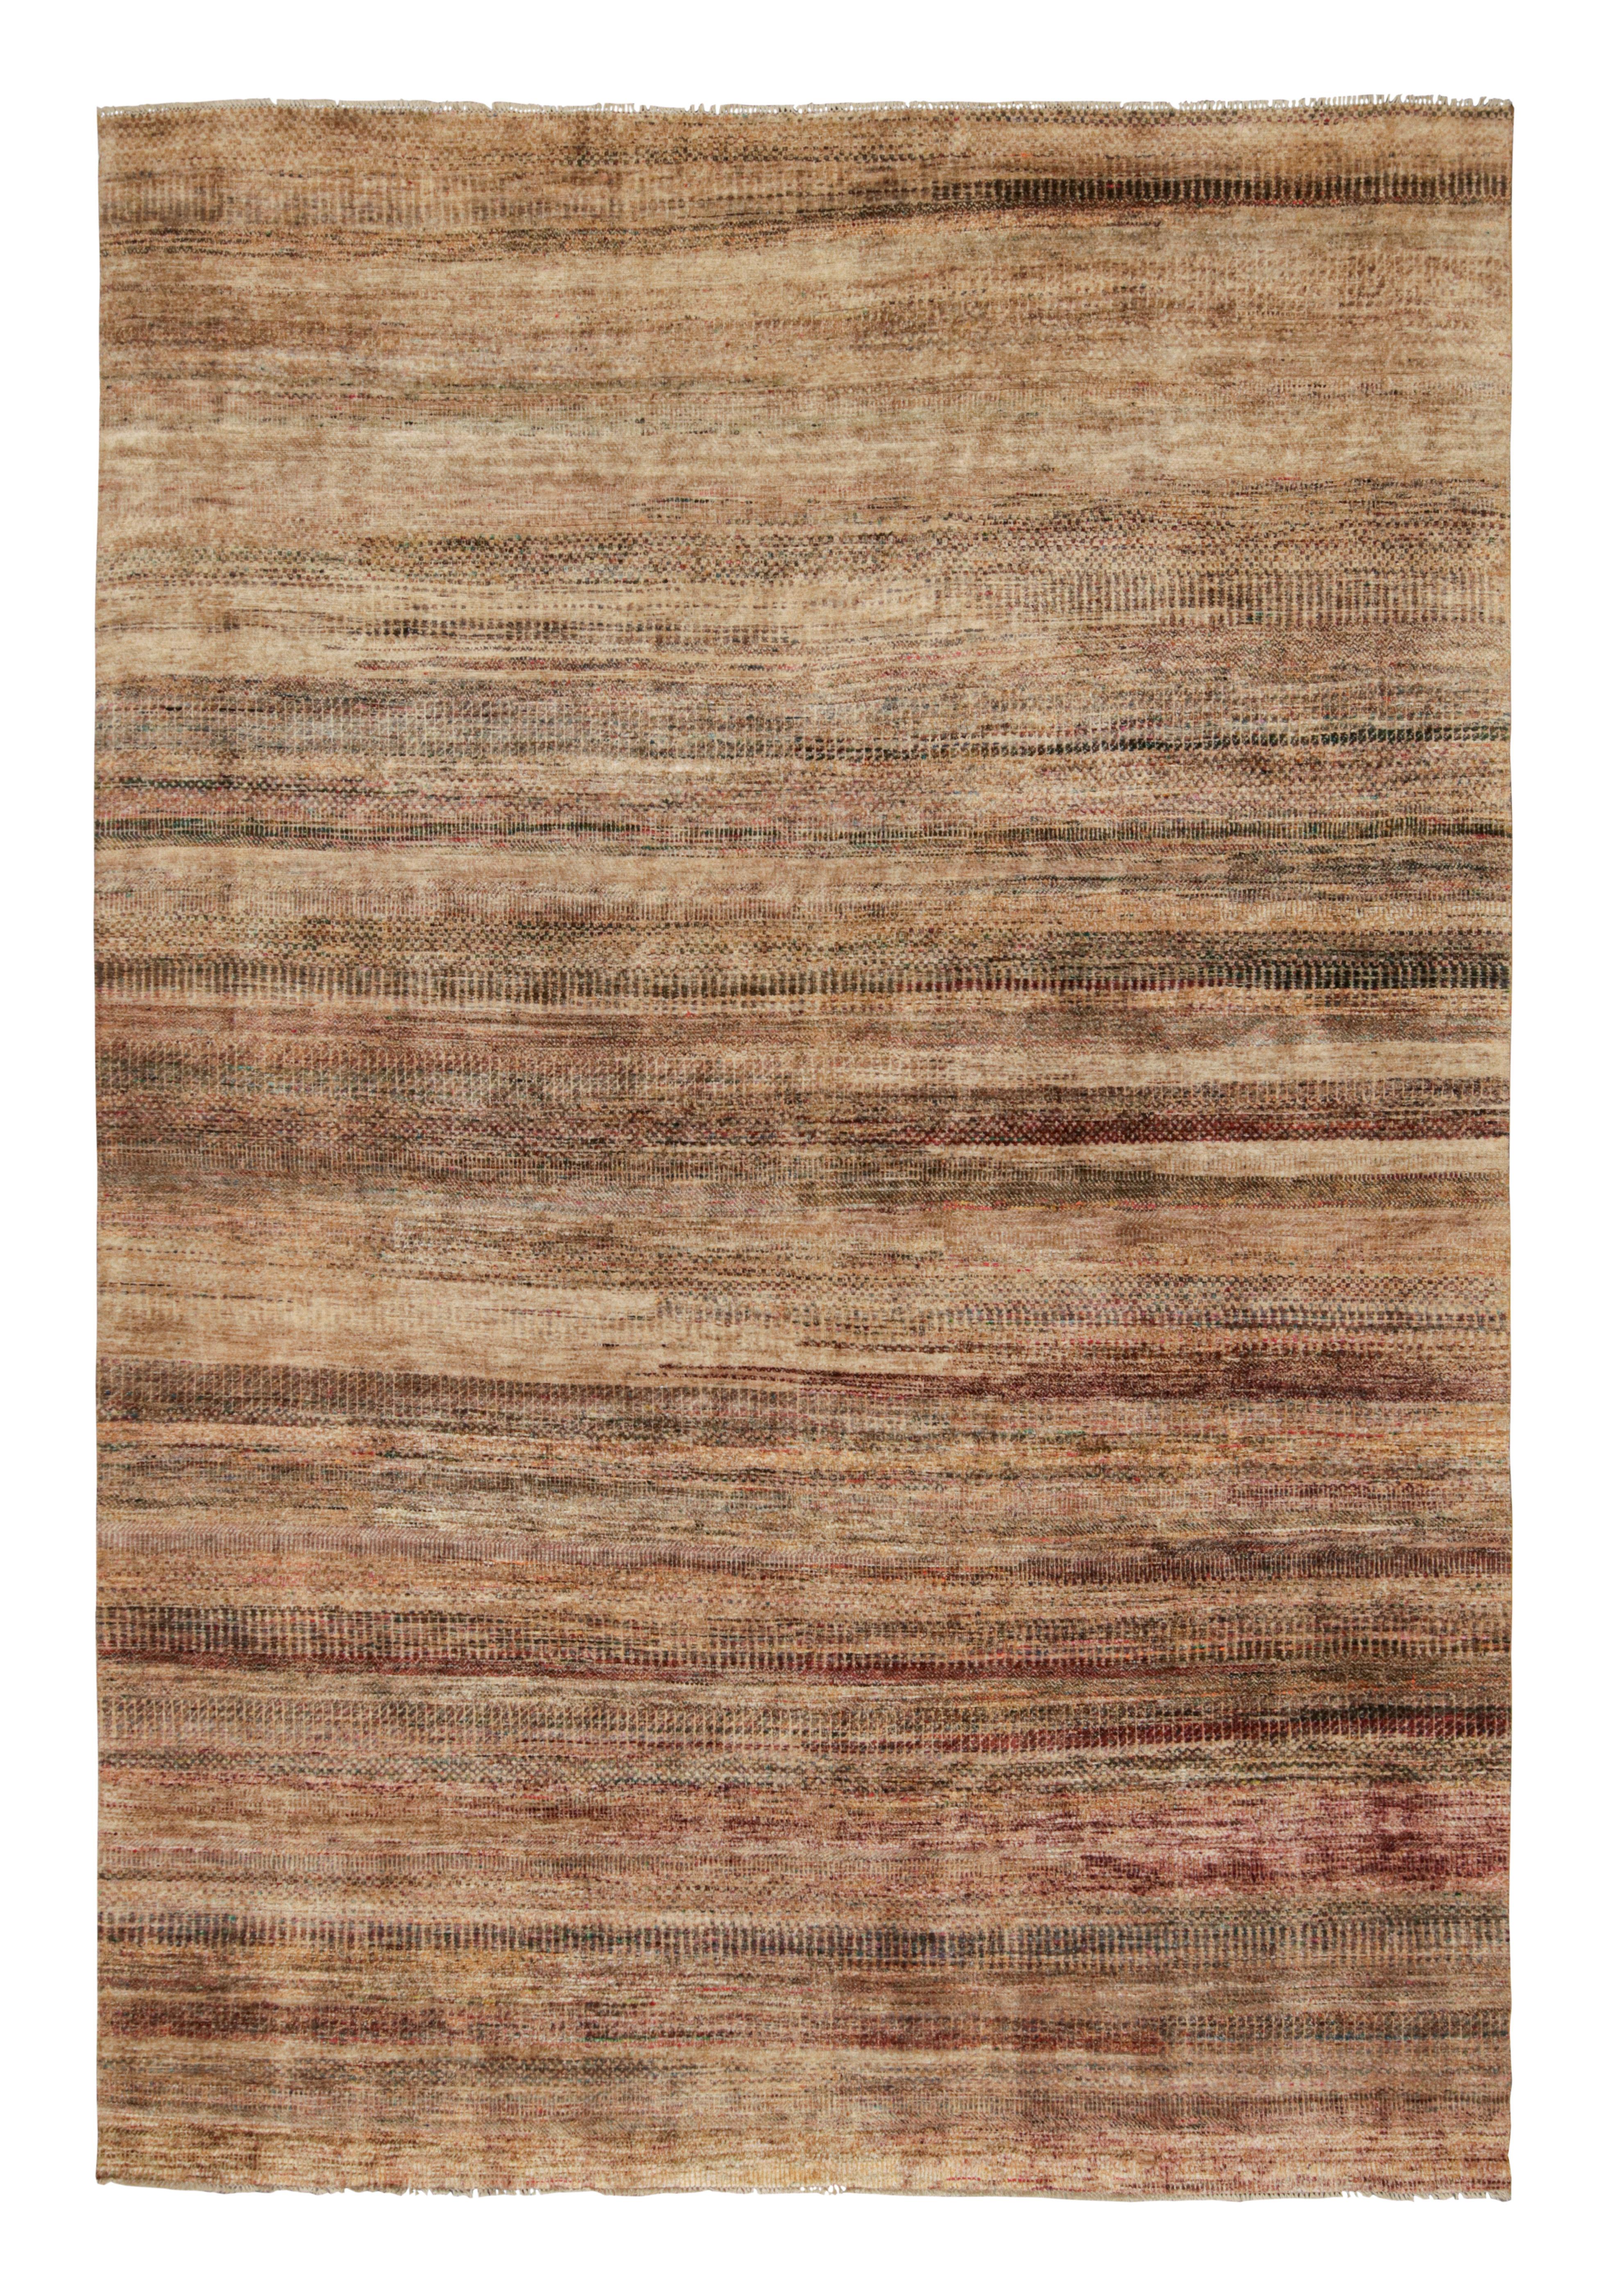 Ce tapis 10x14 est un nouvel ajout à la Collection Texture of Color de Rug & Kilim.

Sur le Design :

Réalisé en soie nouée à la main, ce tapis reflète une nouvelle approche du thème de cette collection, notamment une teinture végétale comme celles